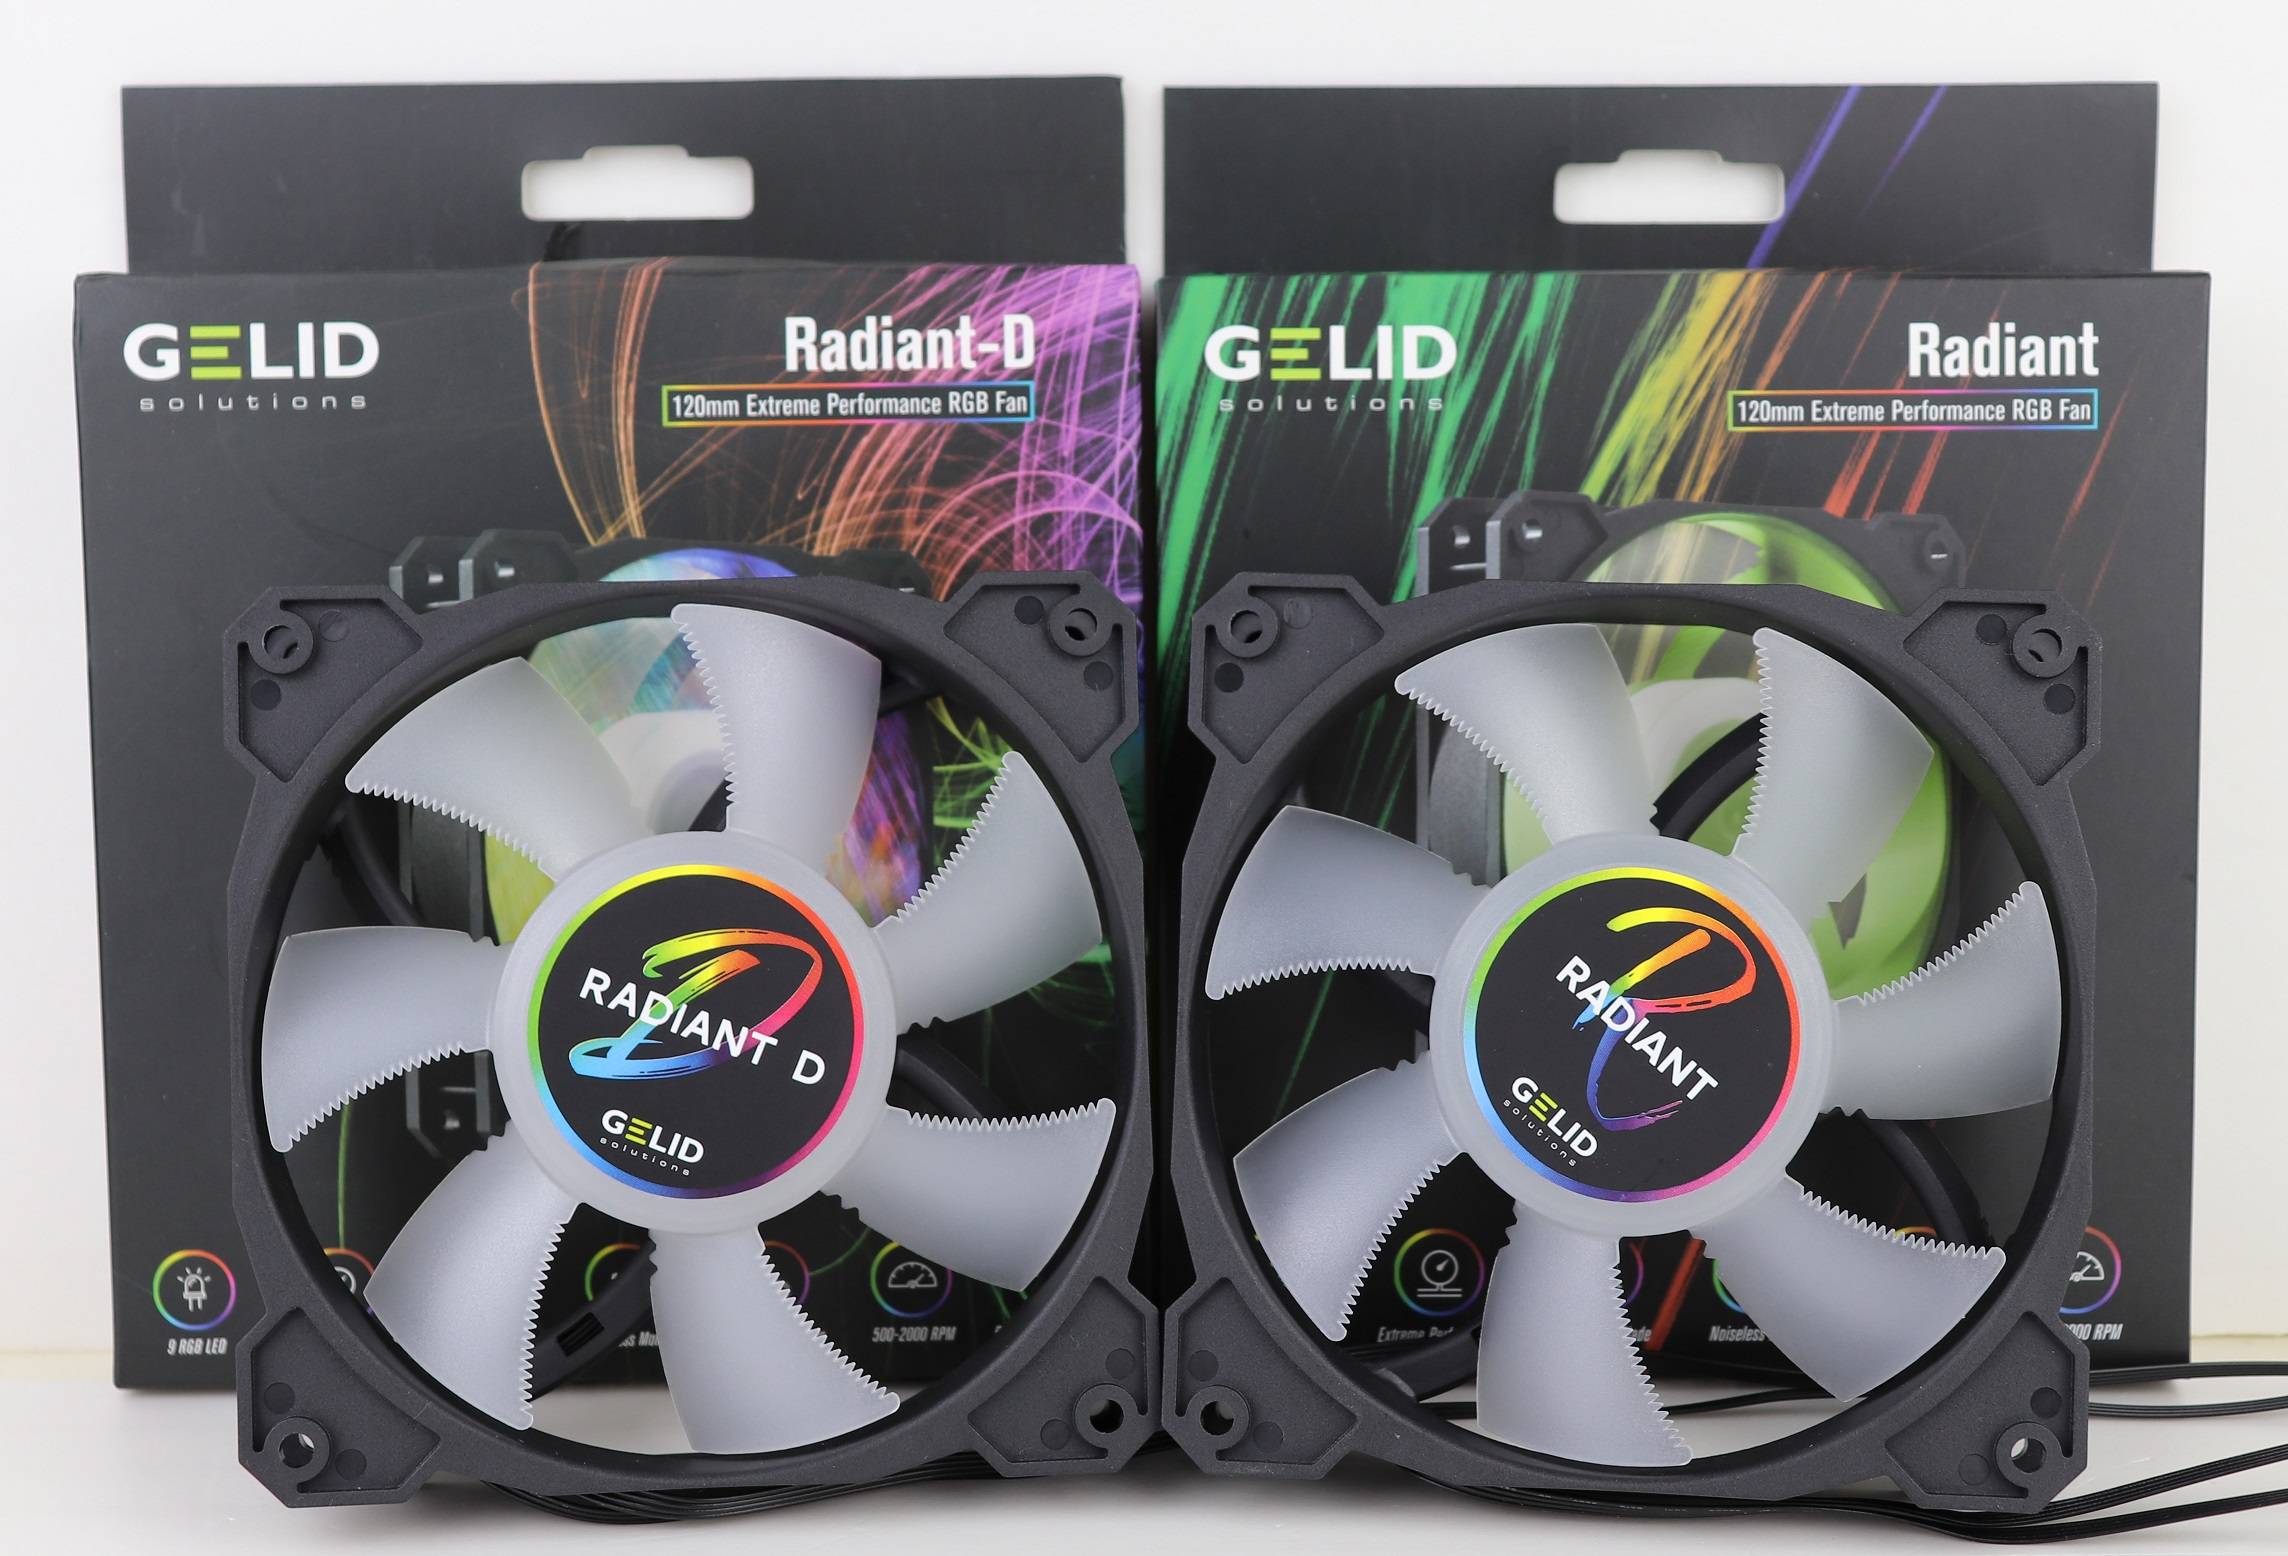 GELID Radiant/Radiant-D RGB Fans